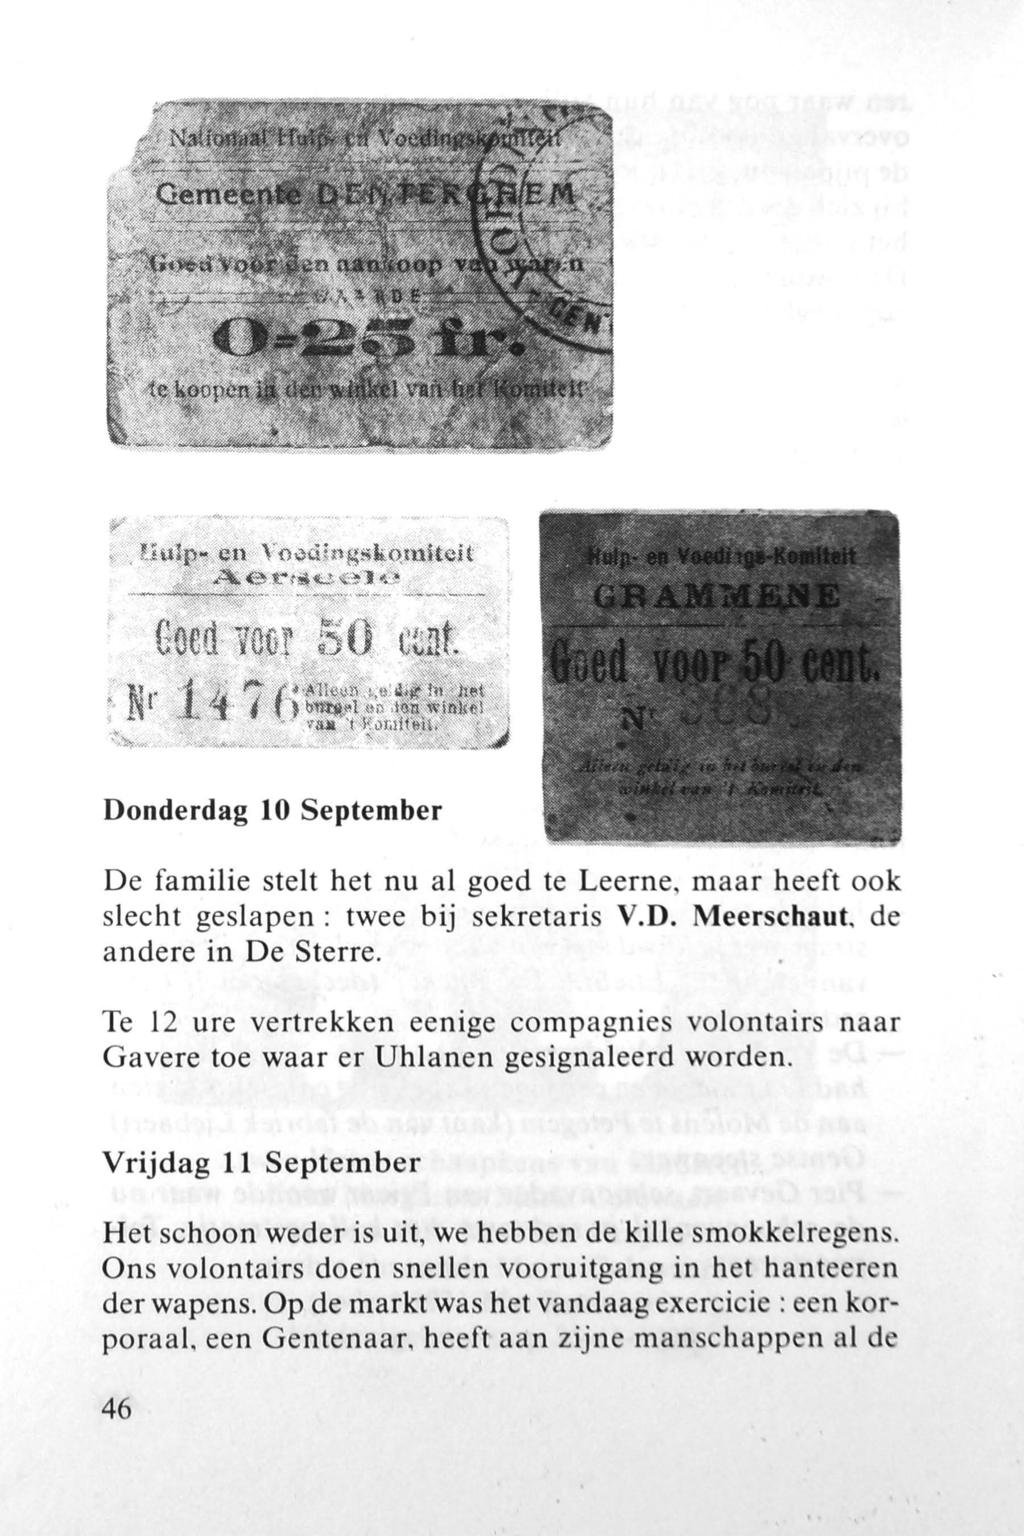 Donderdag 10 September De familie stelt het nu al goed te Leerne, maar heeft ook slecht geslapen: twee bij sekretaris V.D. Meerschaut, de andere in De Sterre.